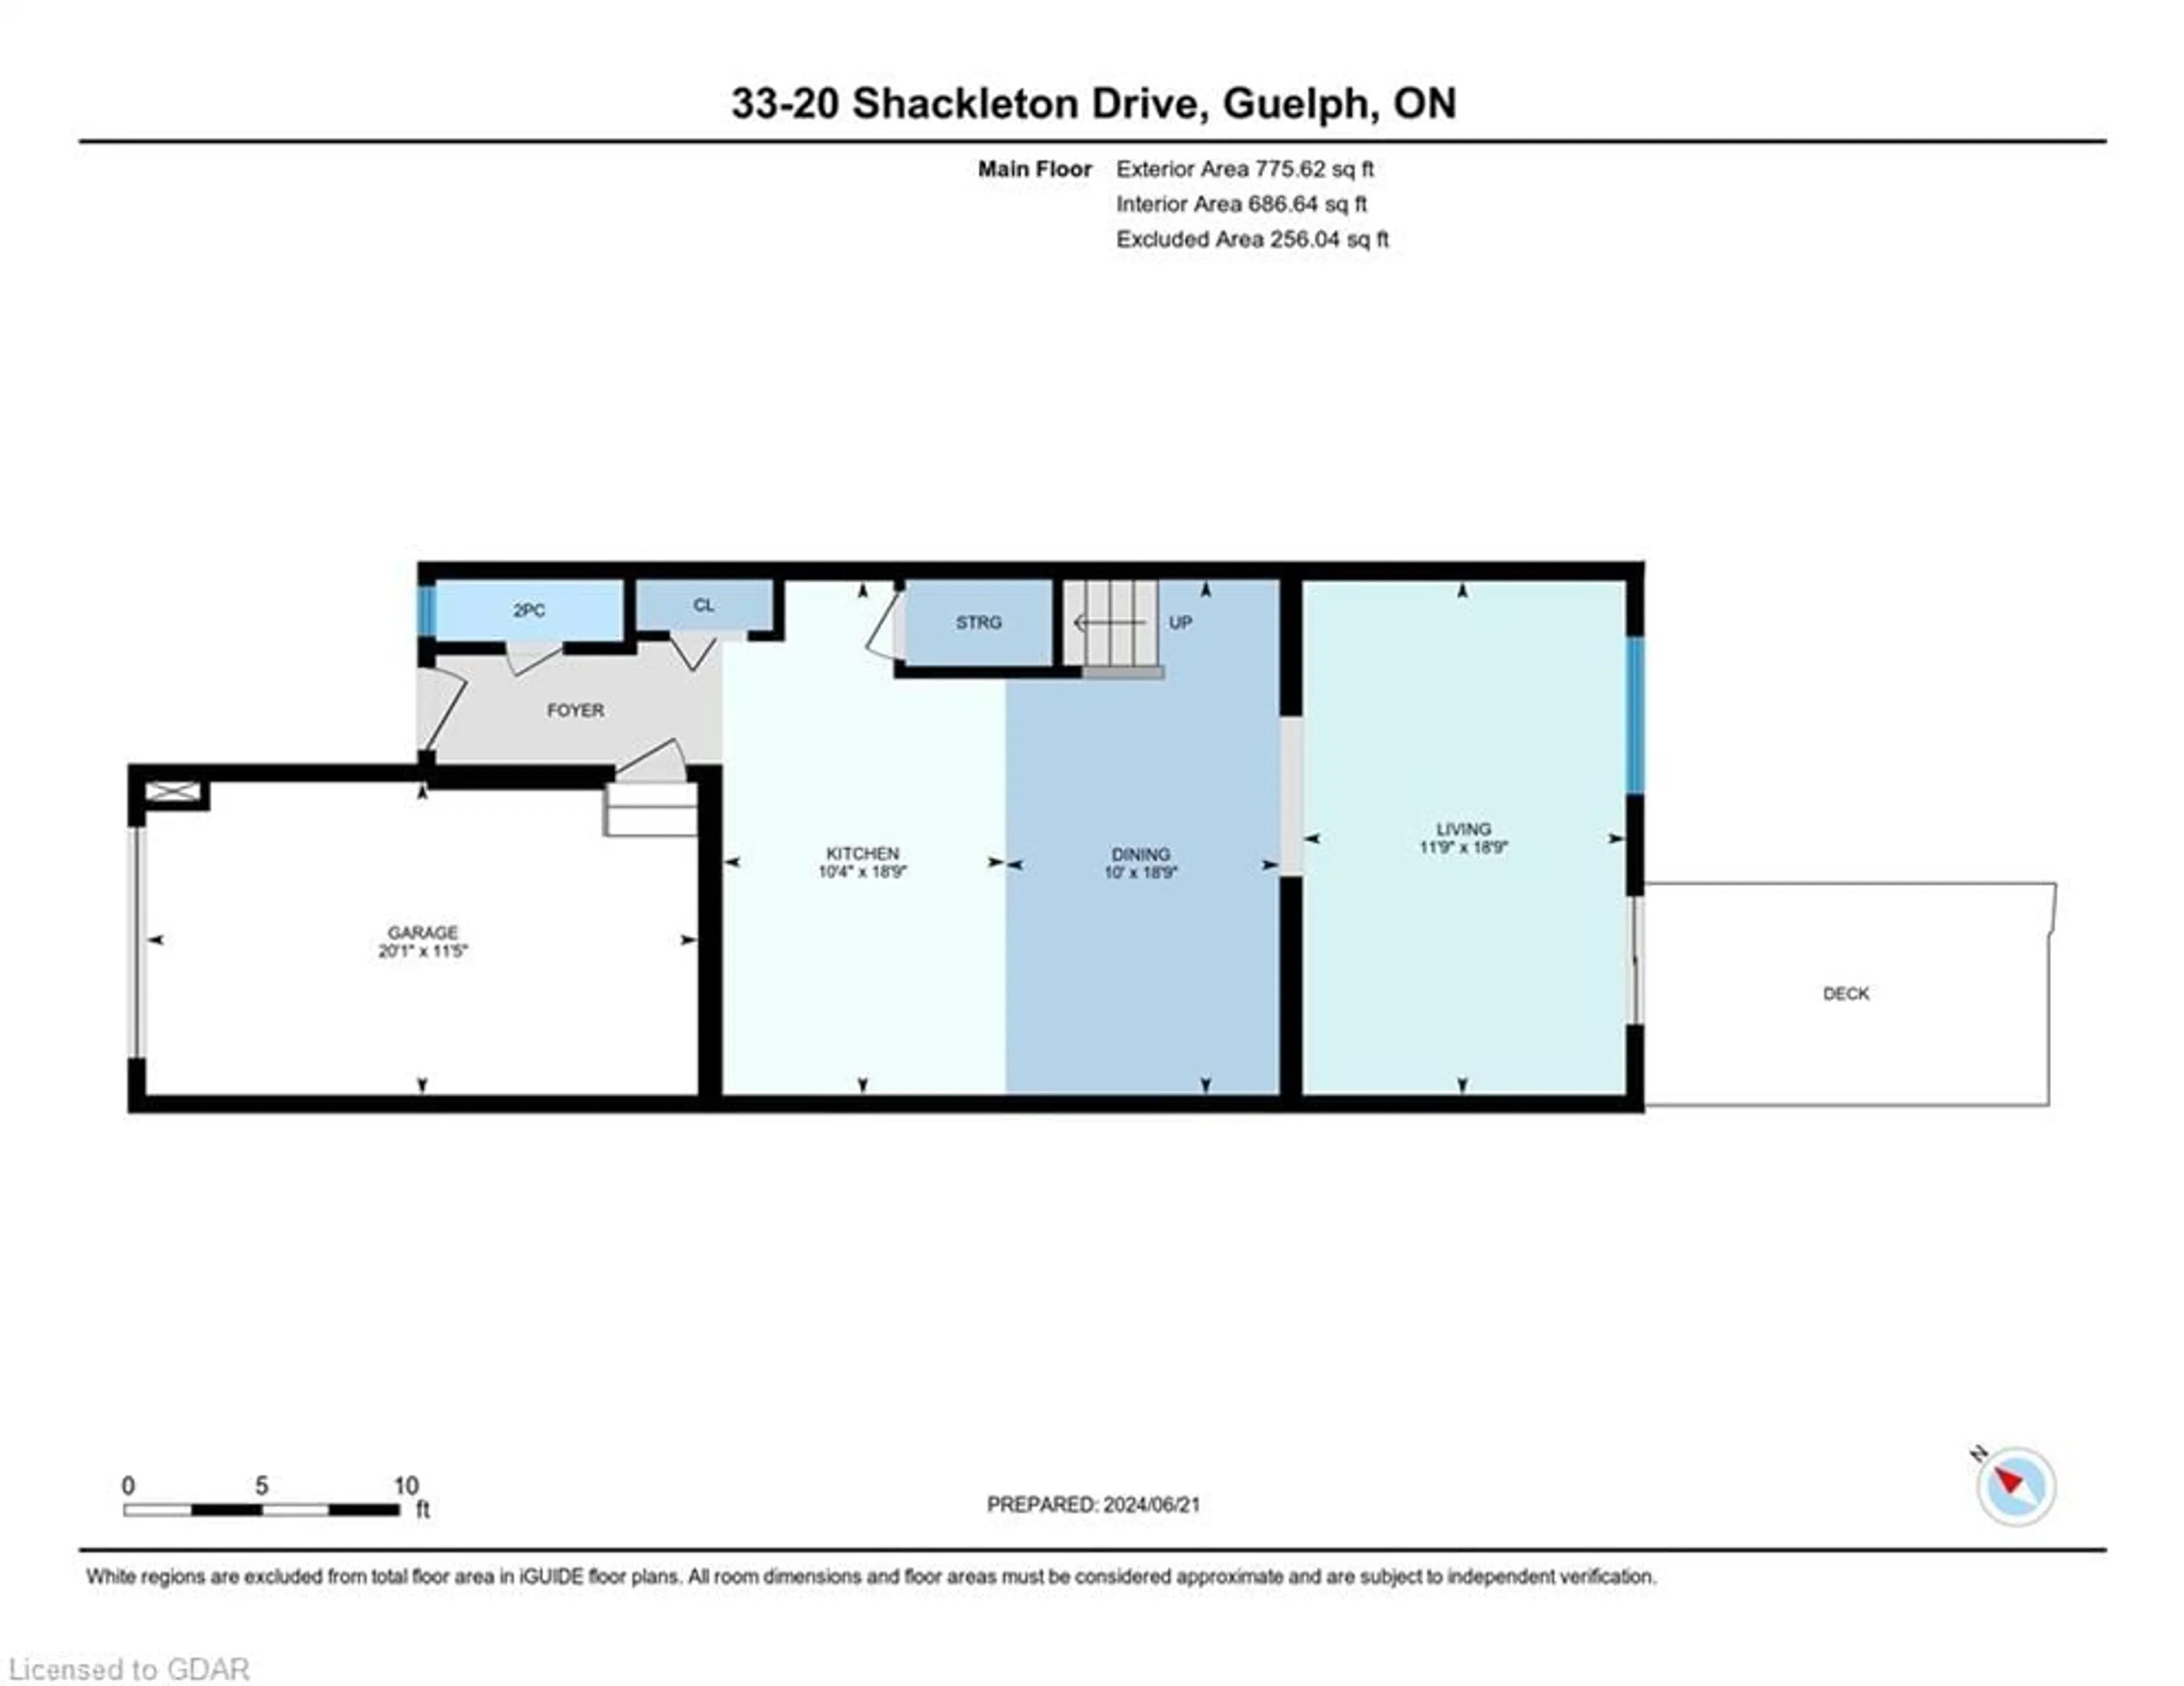 Floor plan for 20 Shackleton Dr #33, Guelph Ontario N1E 0C5